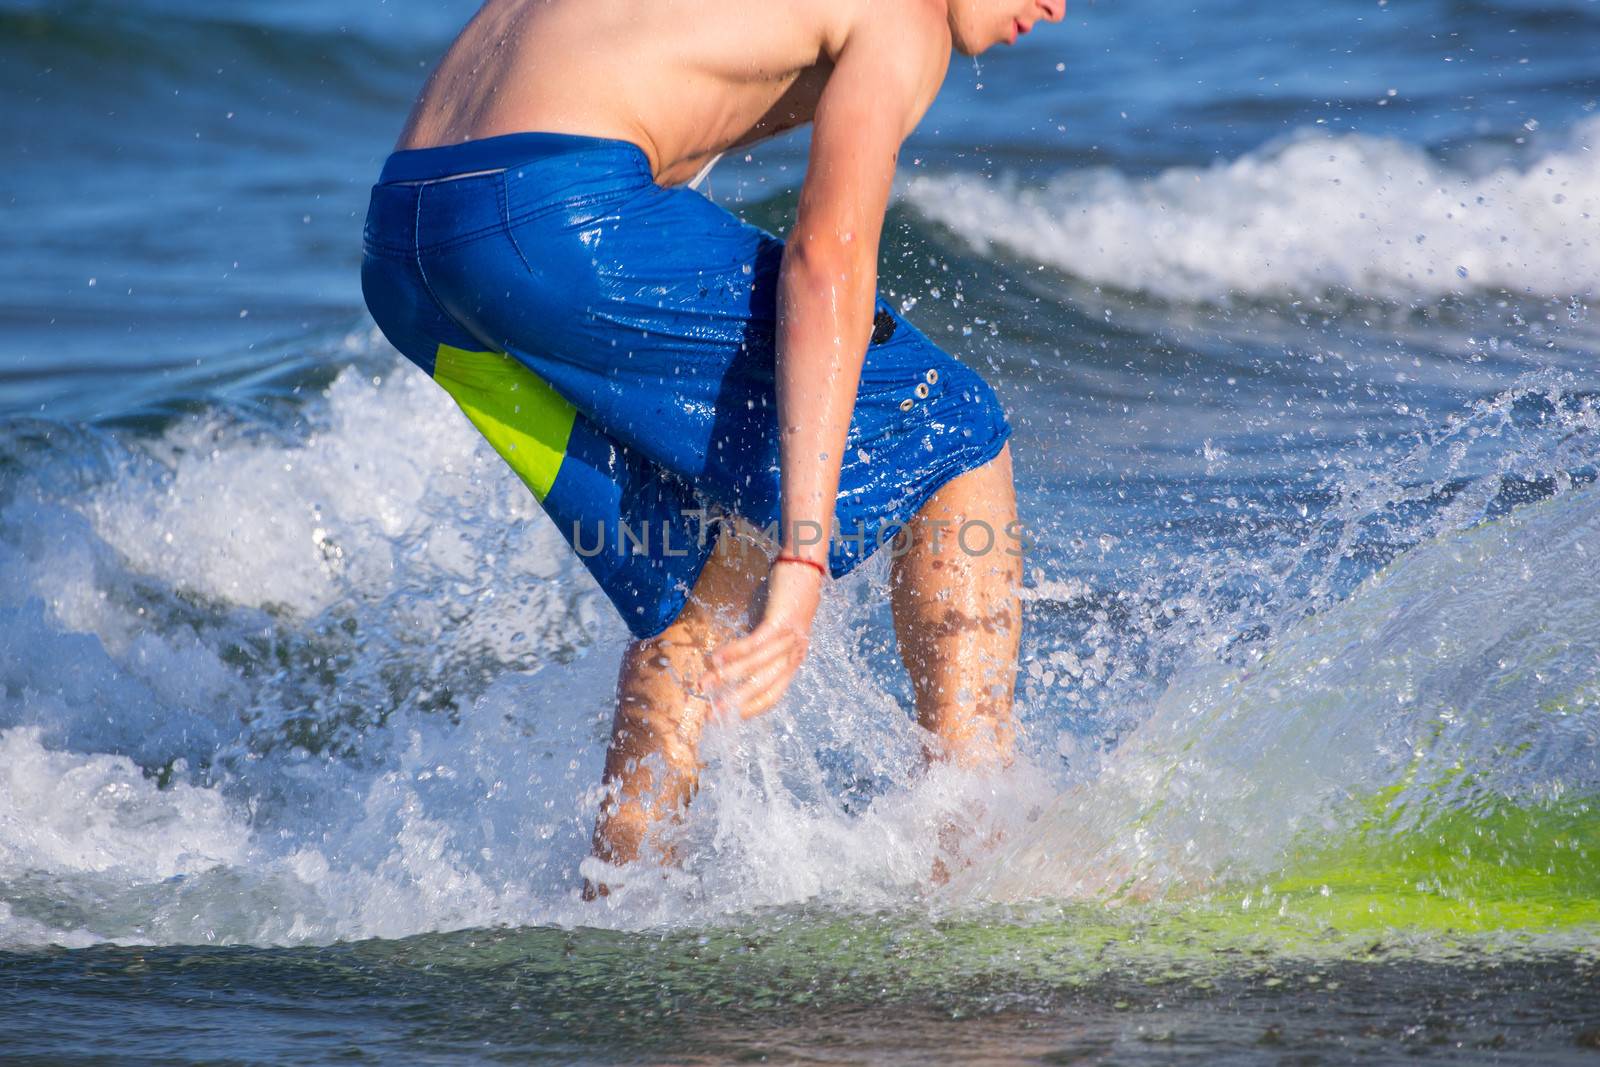 Boy surfer surfing waves on the beach enjoying fun